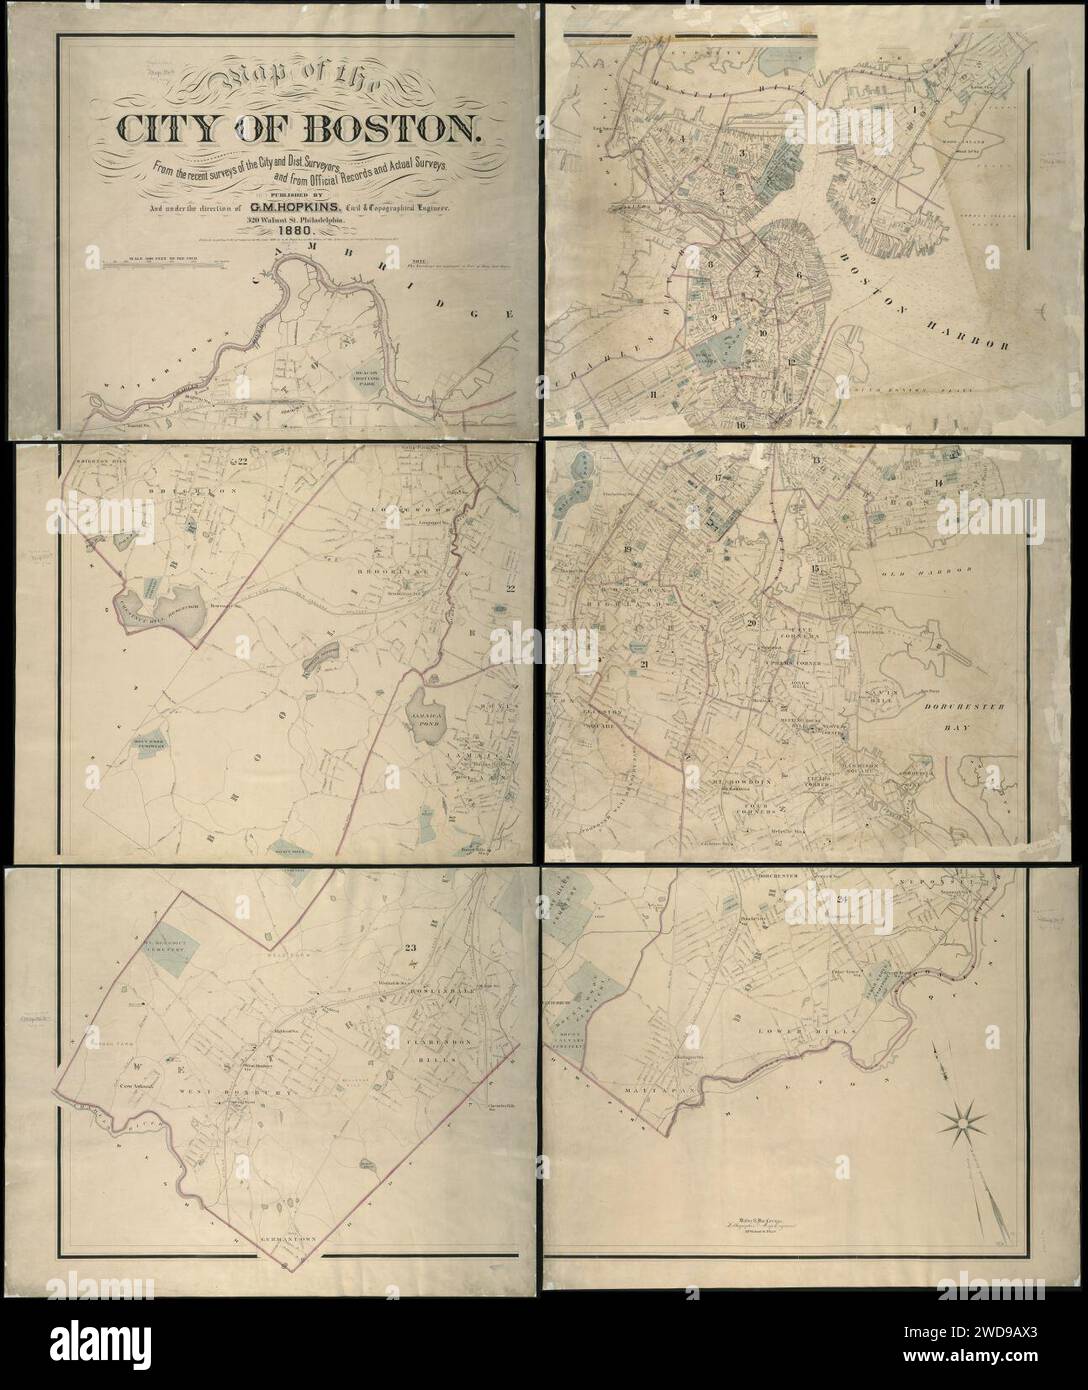 1880 Mappa della città di Boston, dai recenti sondaggi della città e del distr. Surveyors, e da documenti ufficiali e indagini effettive, Walter S. MacCormac, G. M. Hopkins & Co, Foto Stock